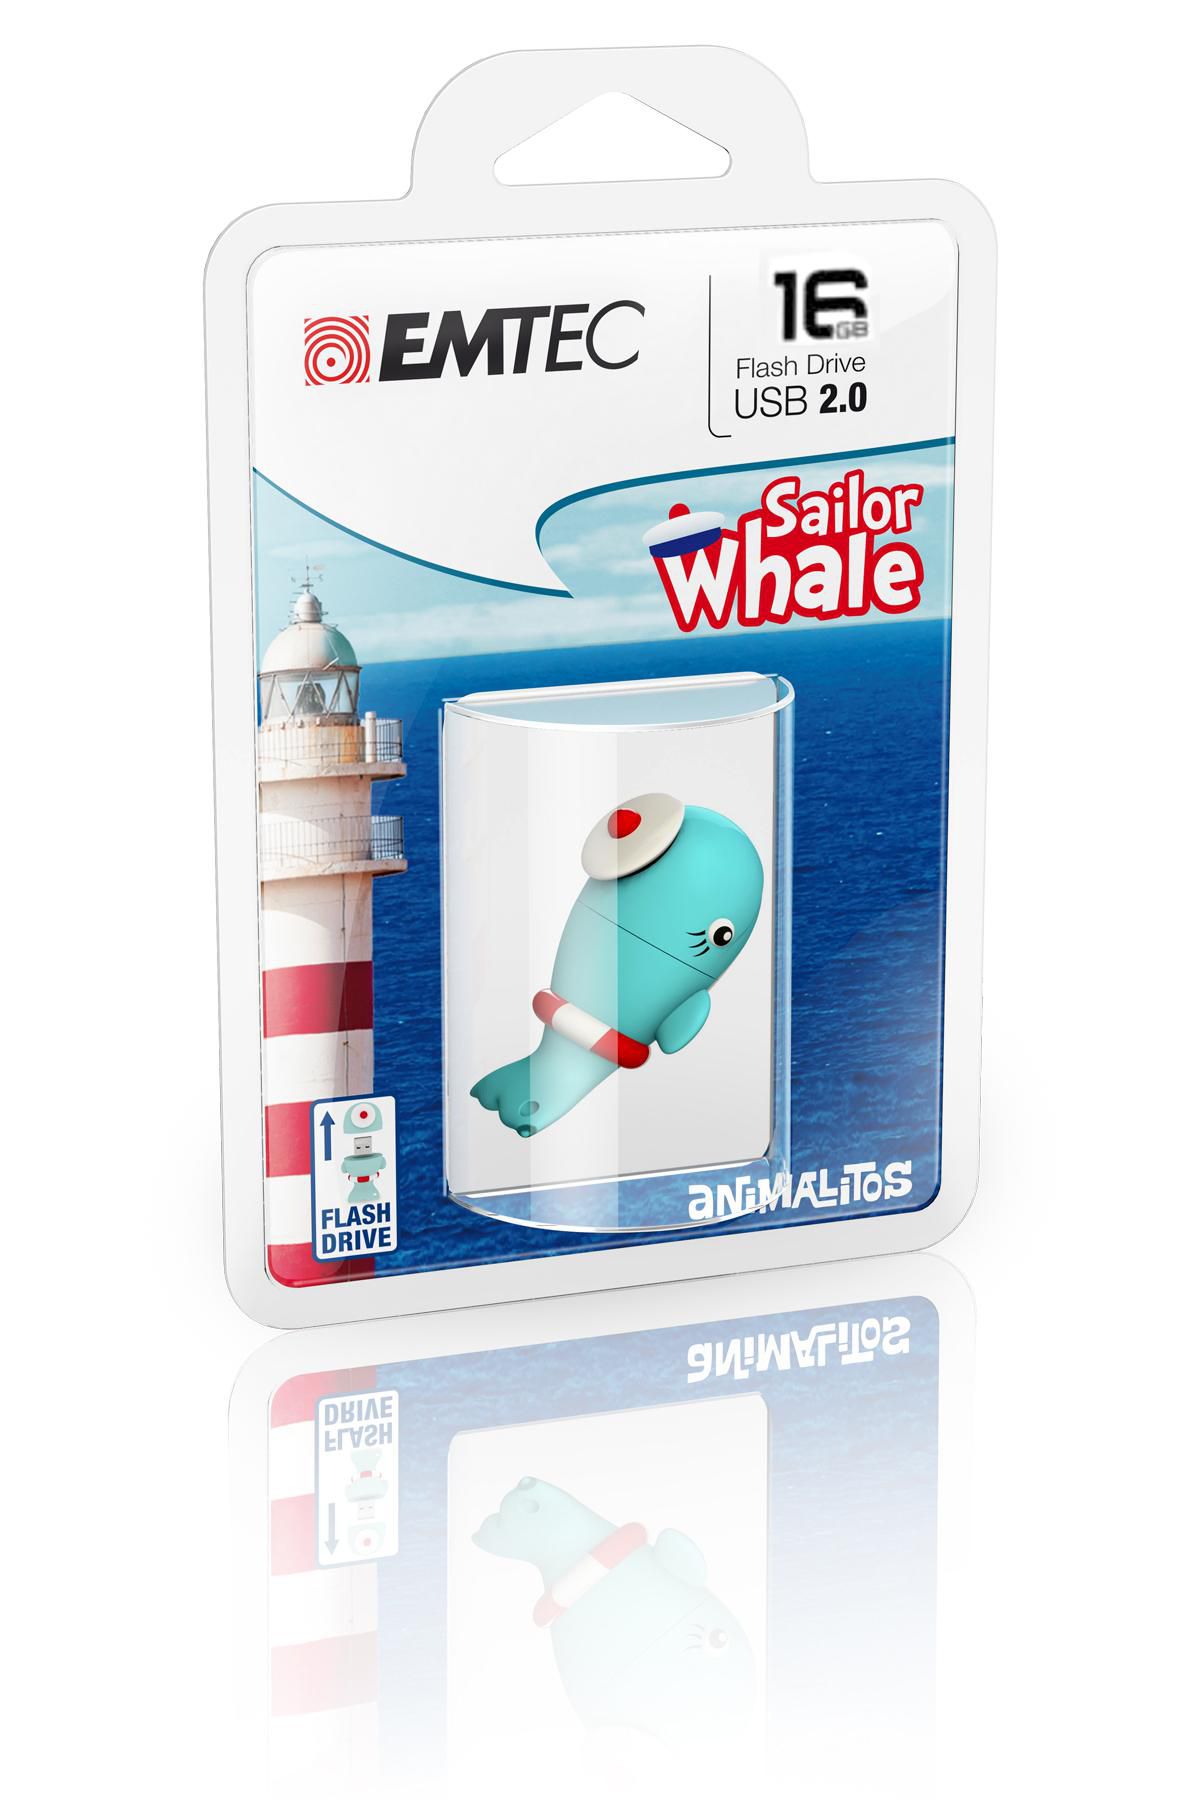 Emtec ECMMD16GM337 W128285889 Sailor Whale Usb Flash Drive 